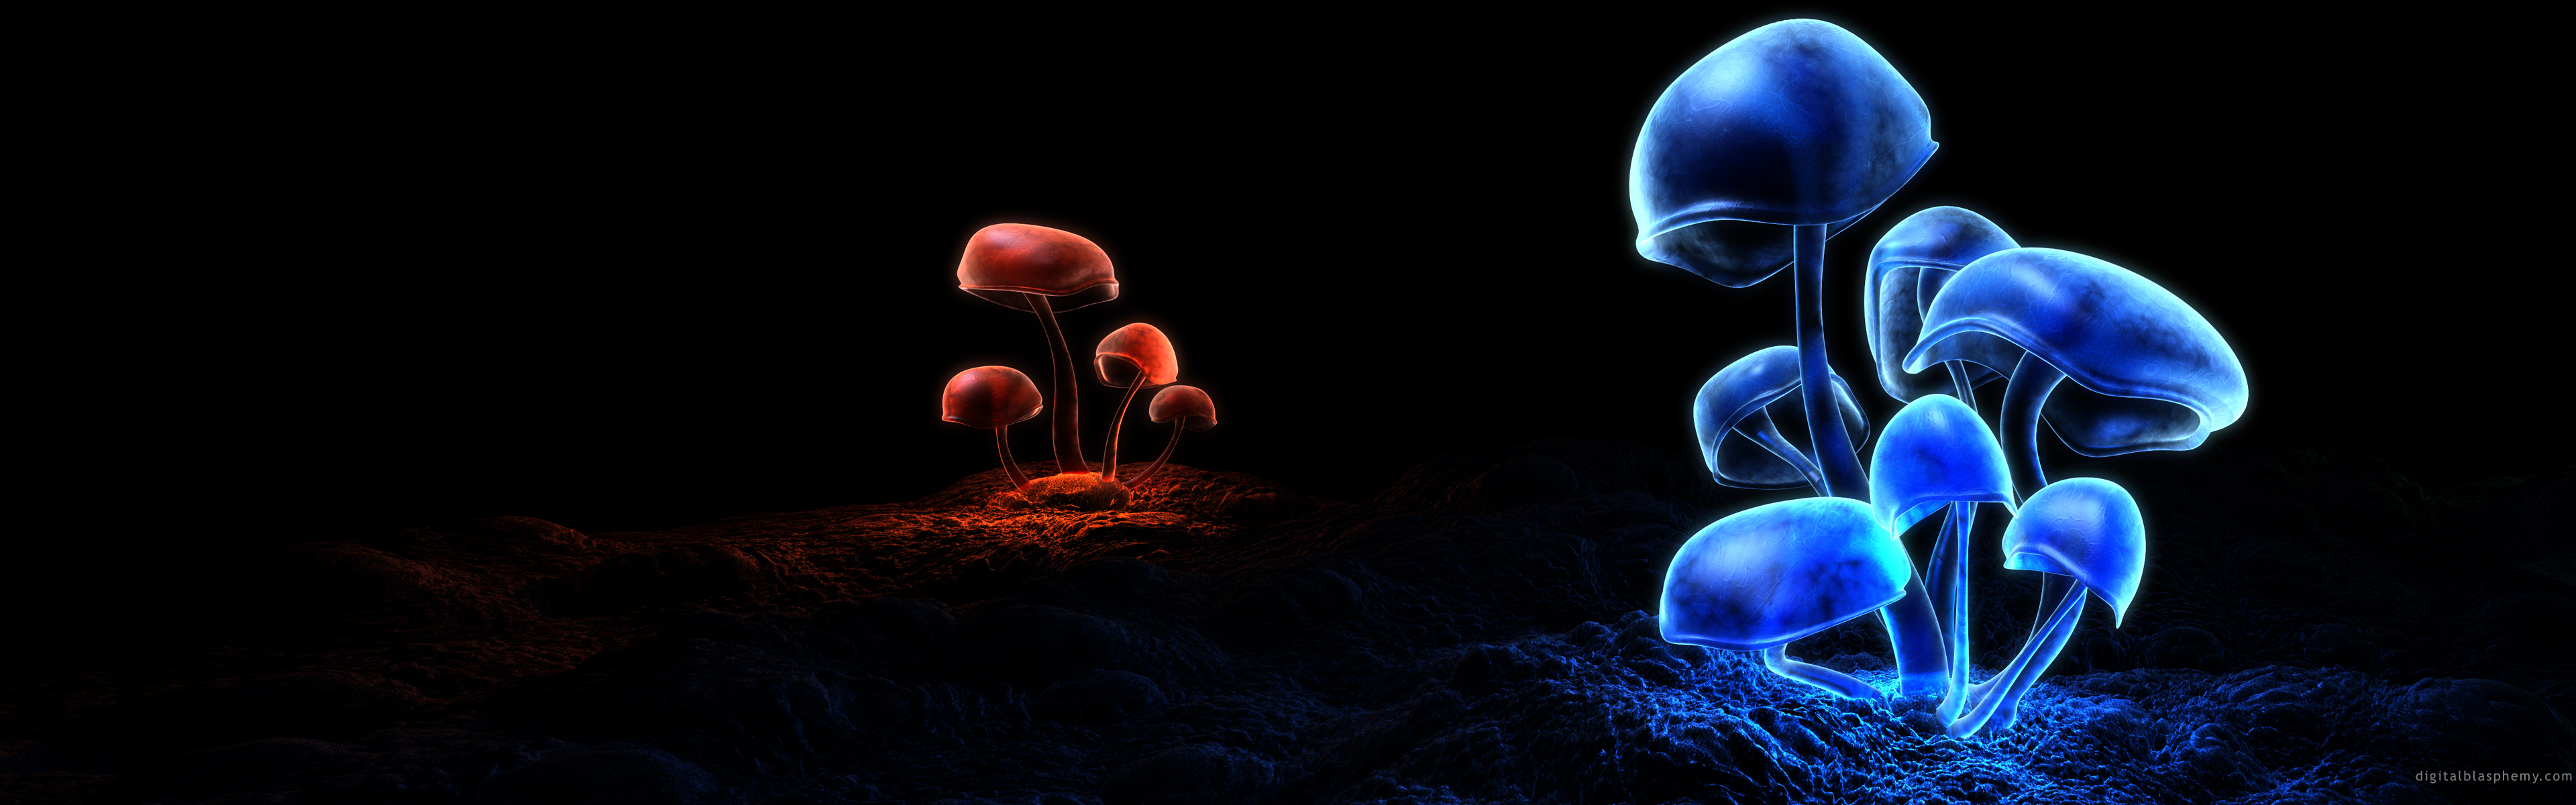 грибы, цифровое искусство - обои на рабочий стол